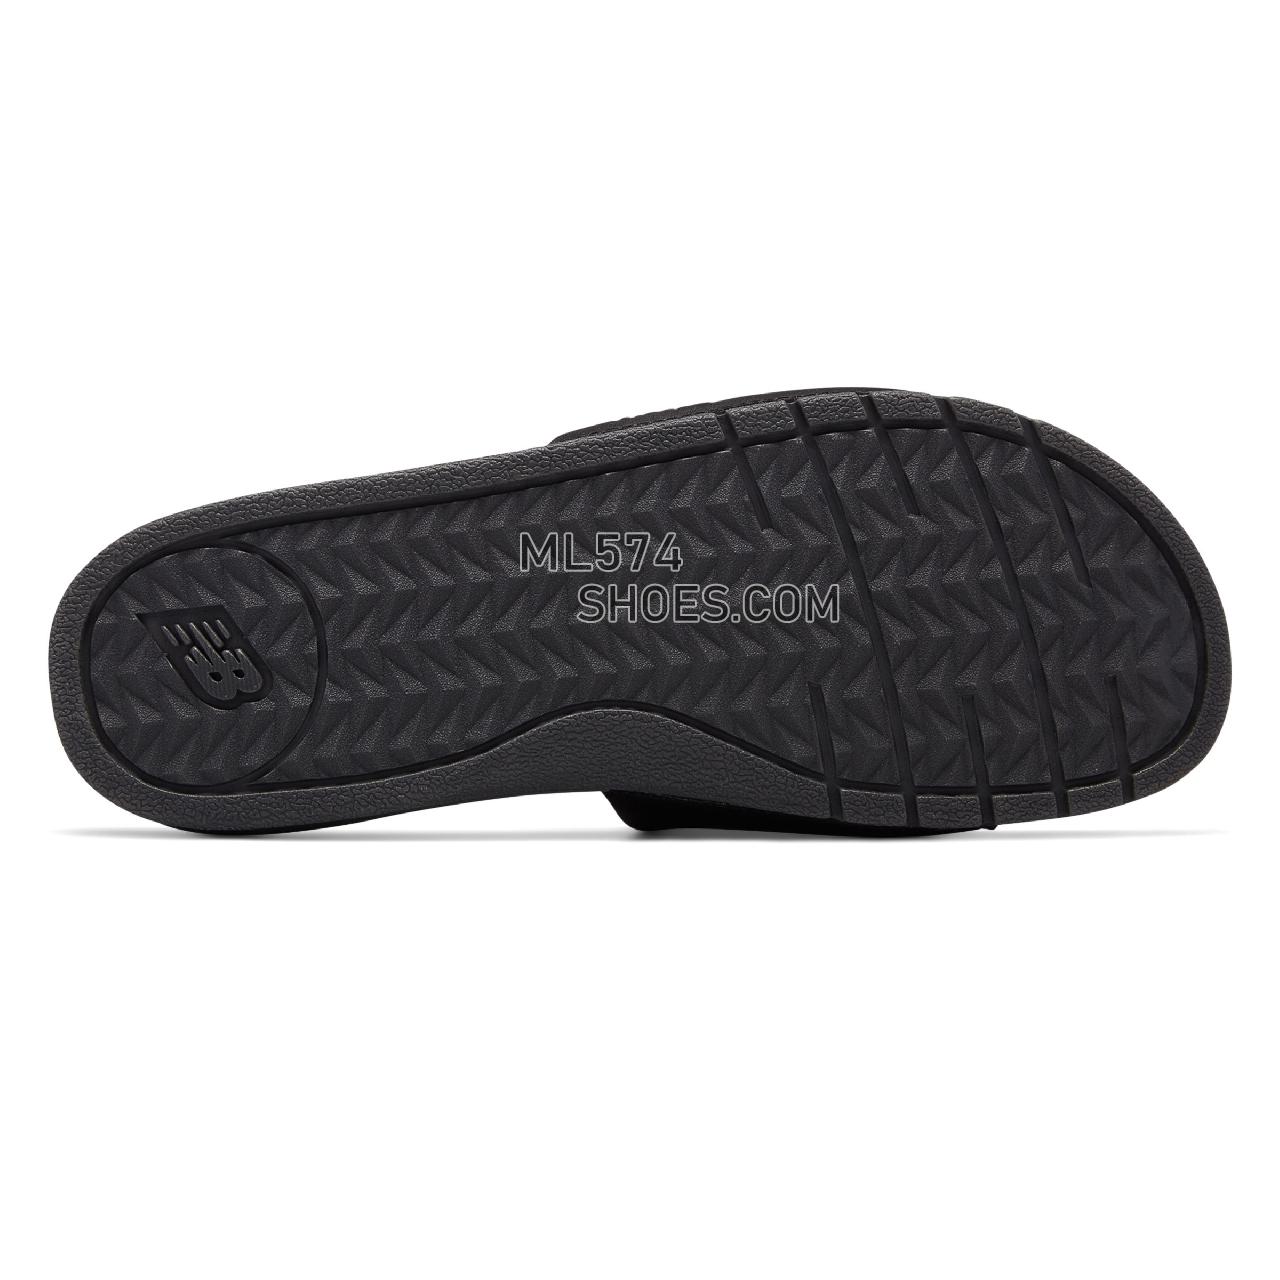 New Balance NB Pro Slide - Men's 3068 - Sandals Black with White - M3068BK